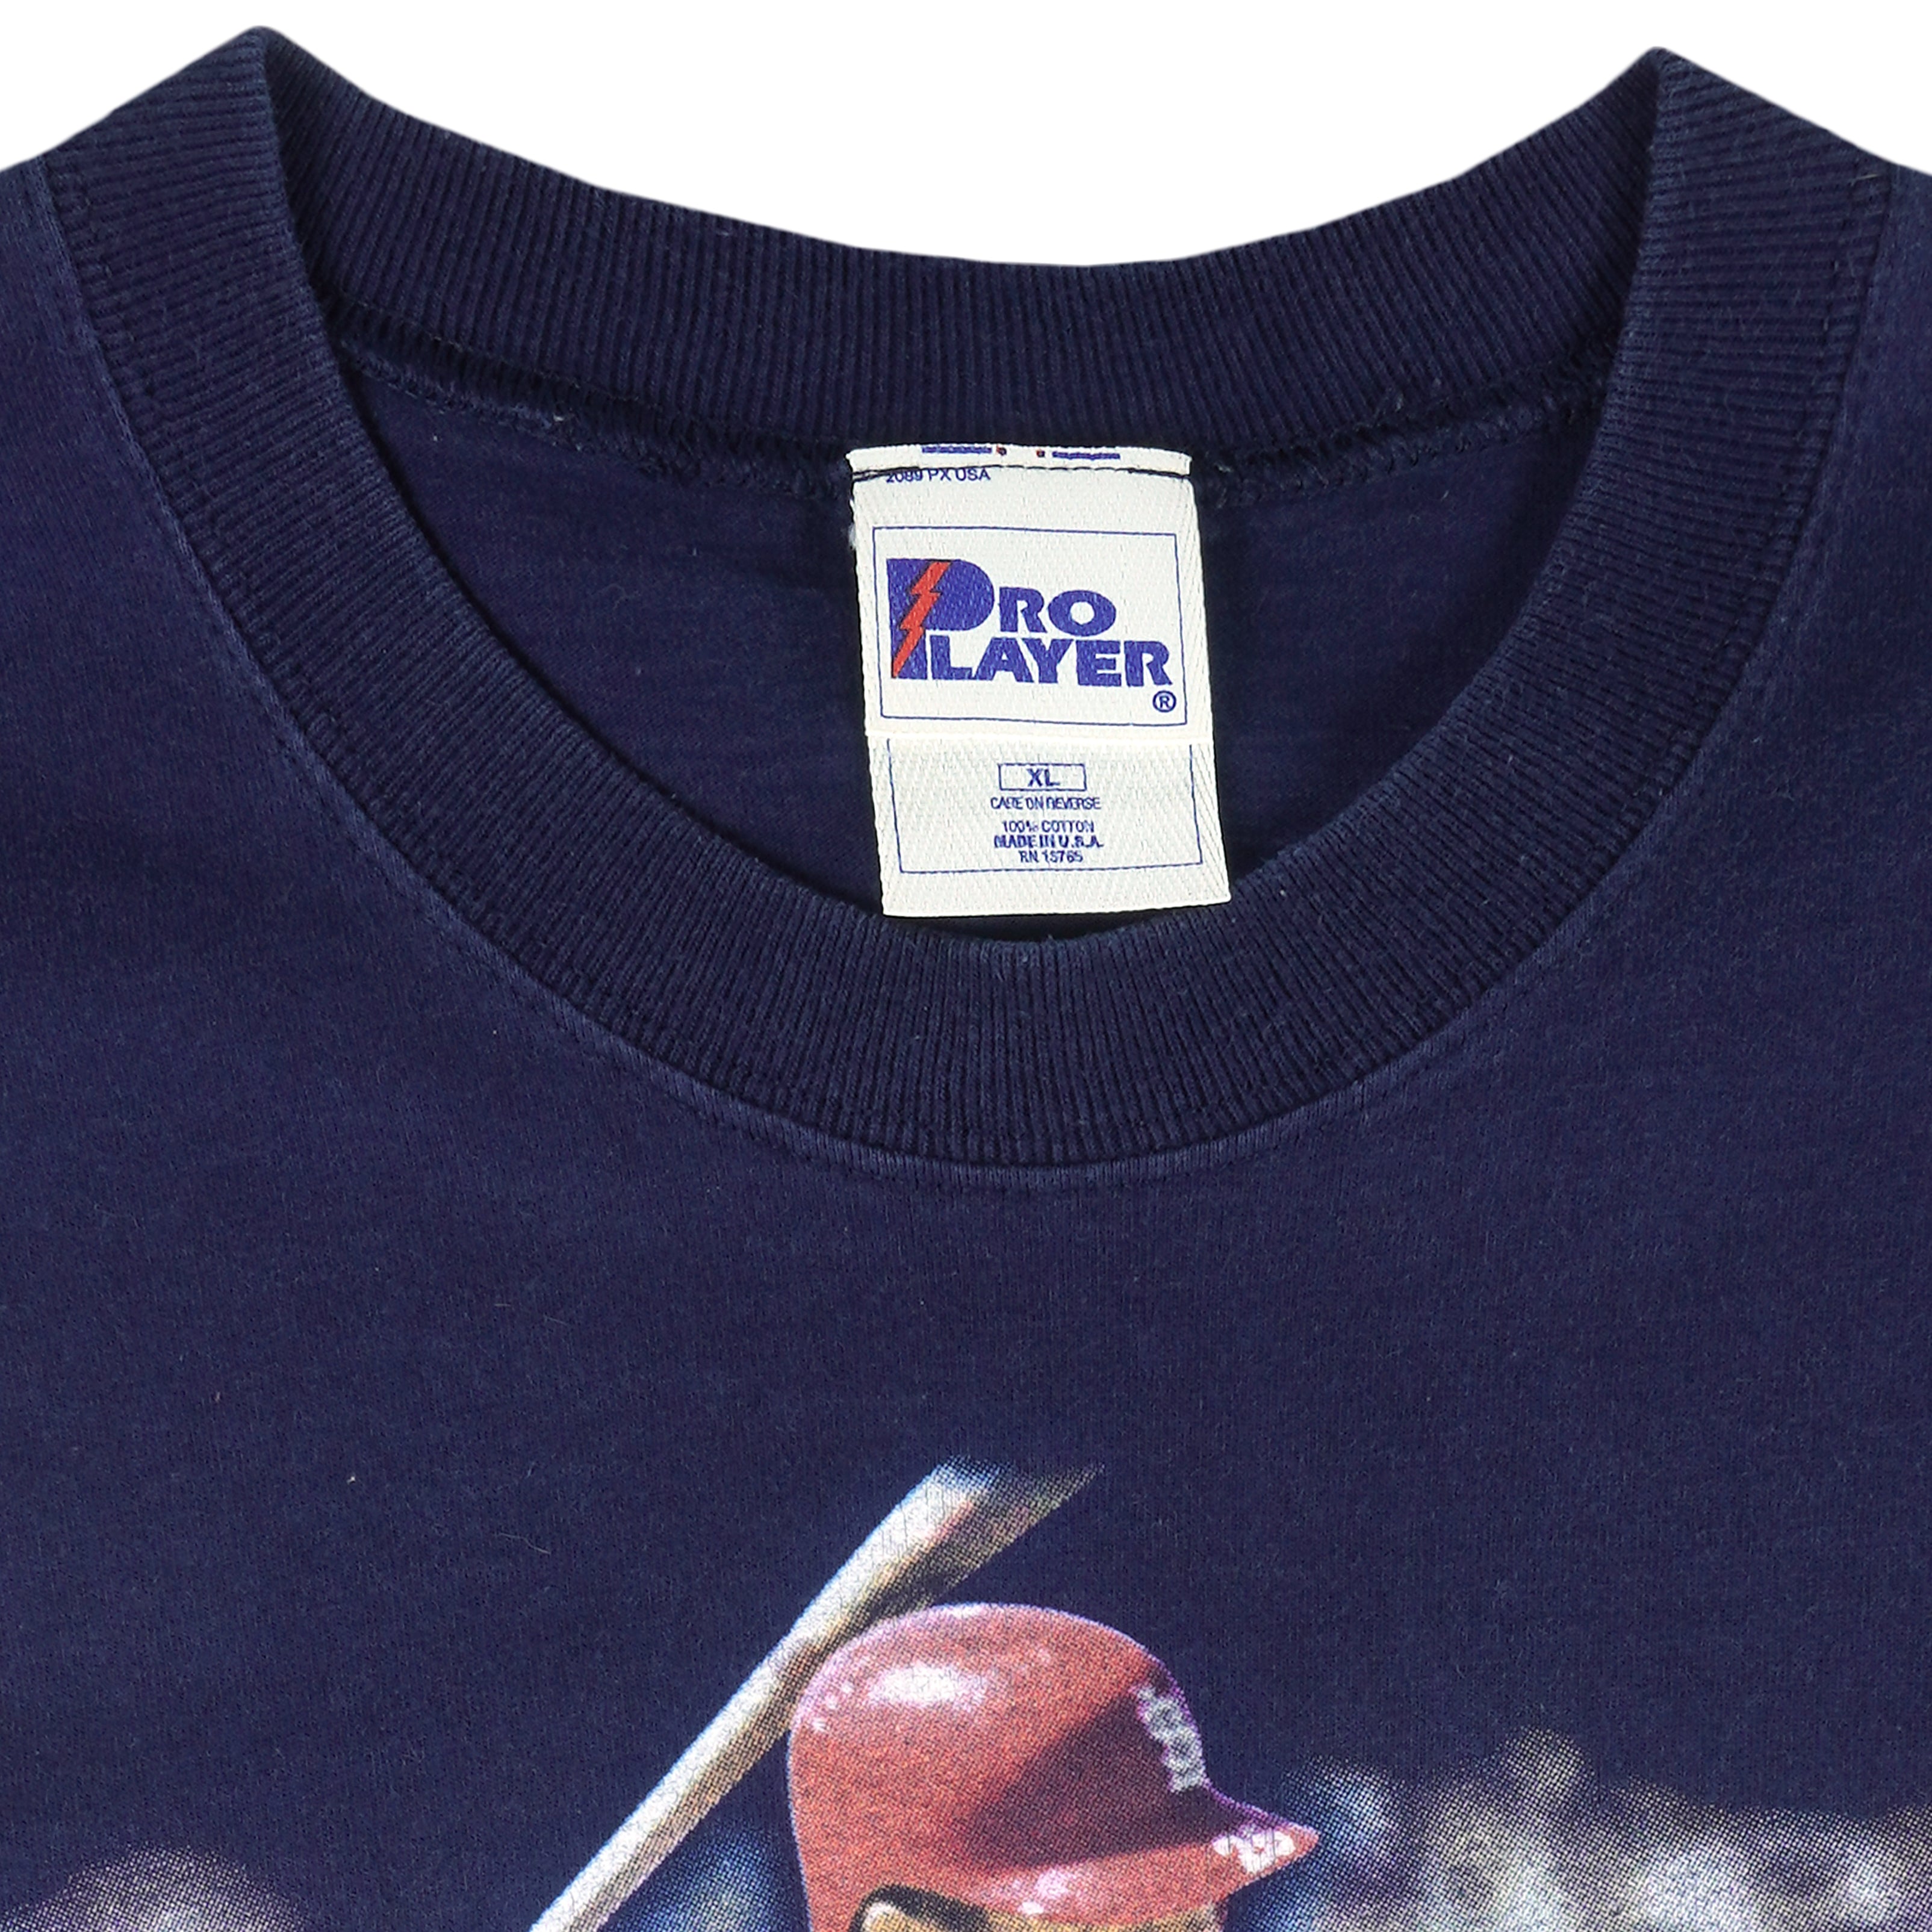 Vintage 1997 St. Louis Cardinals T-Shirt Size XXL